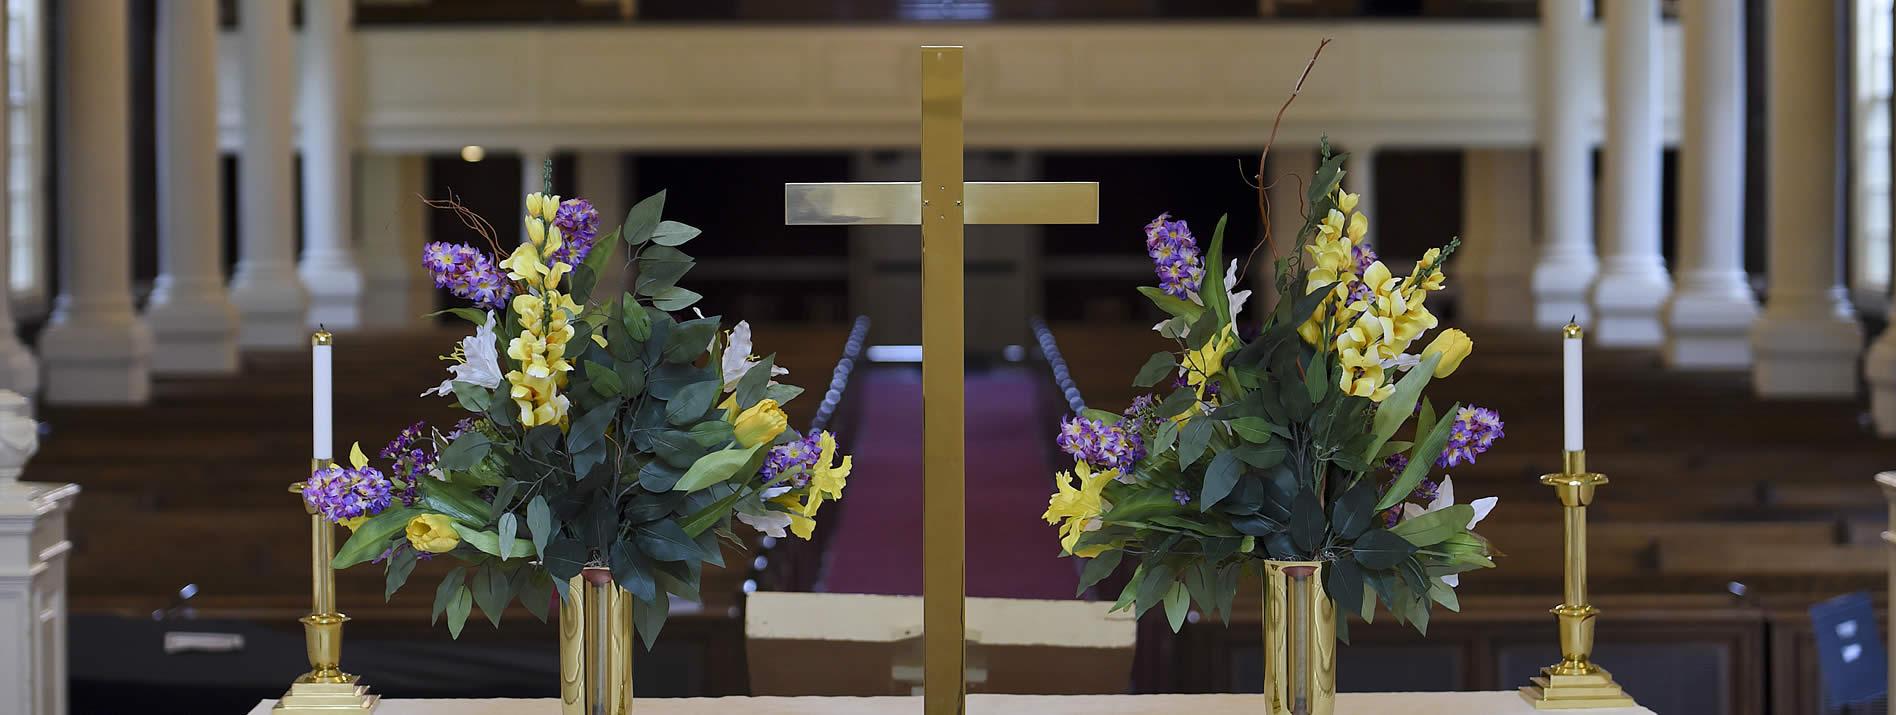 教堂祭坛上有紫色和黄色的花